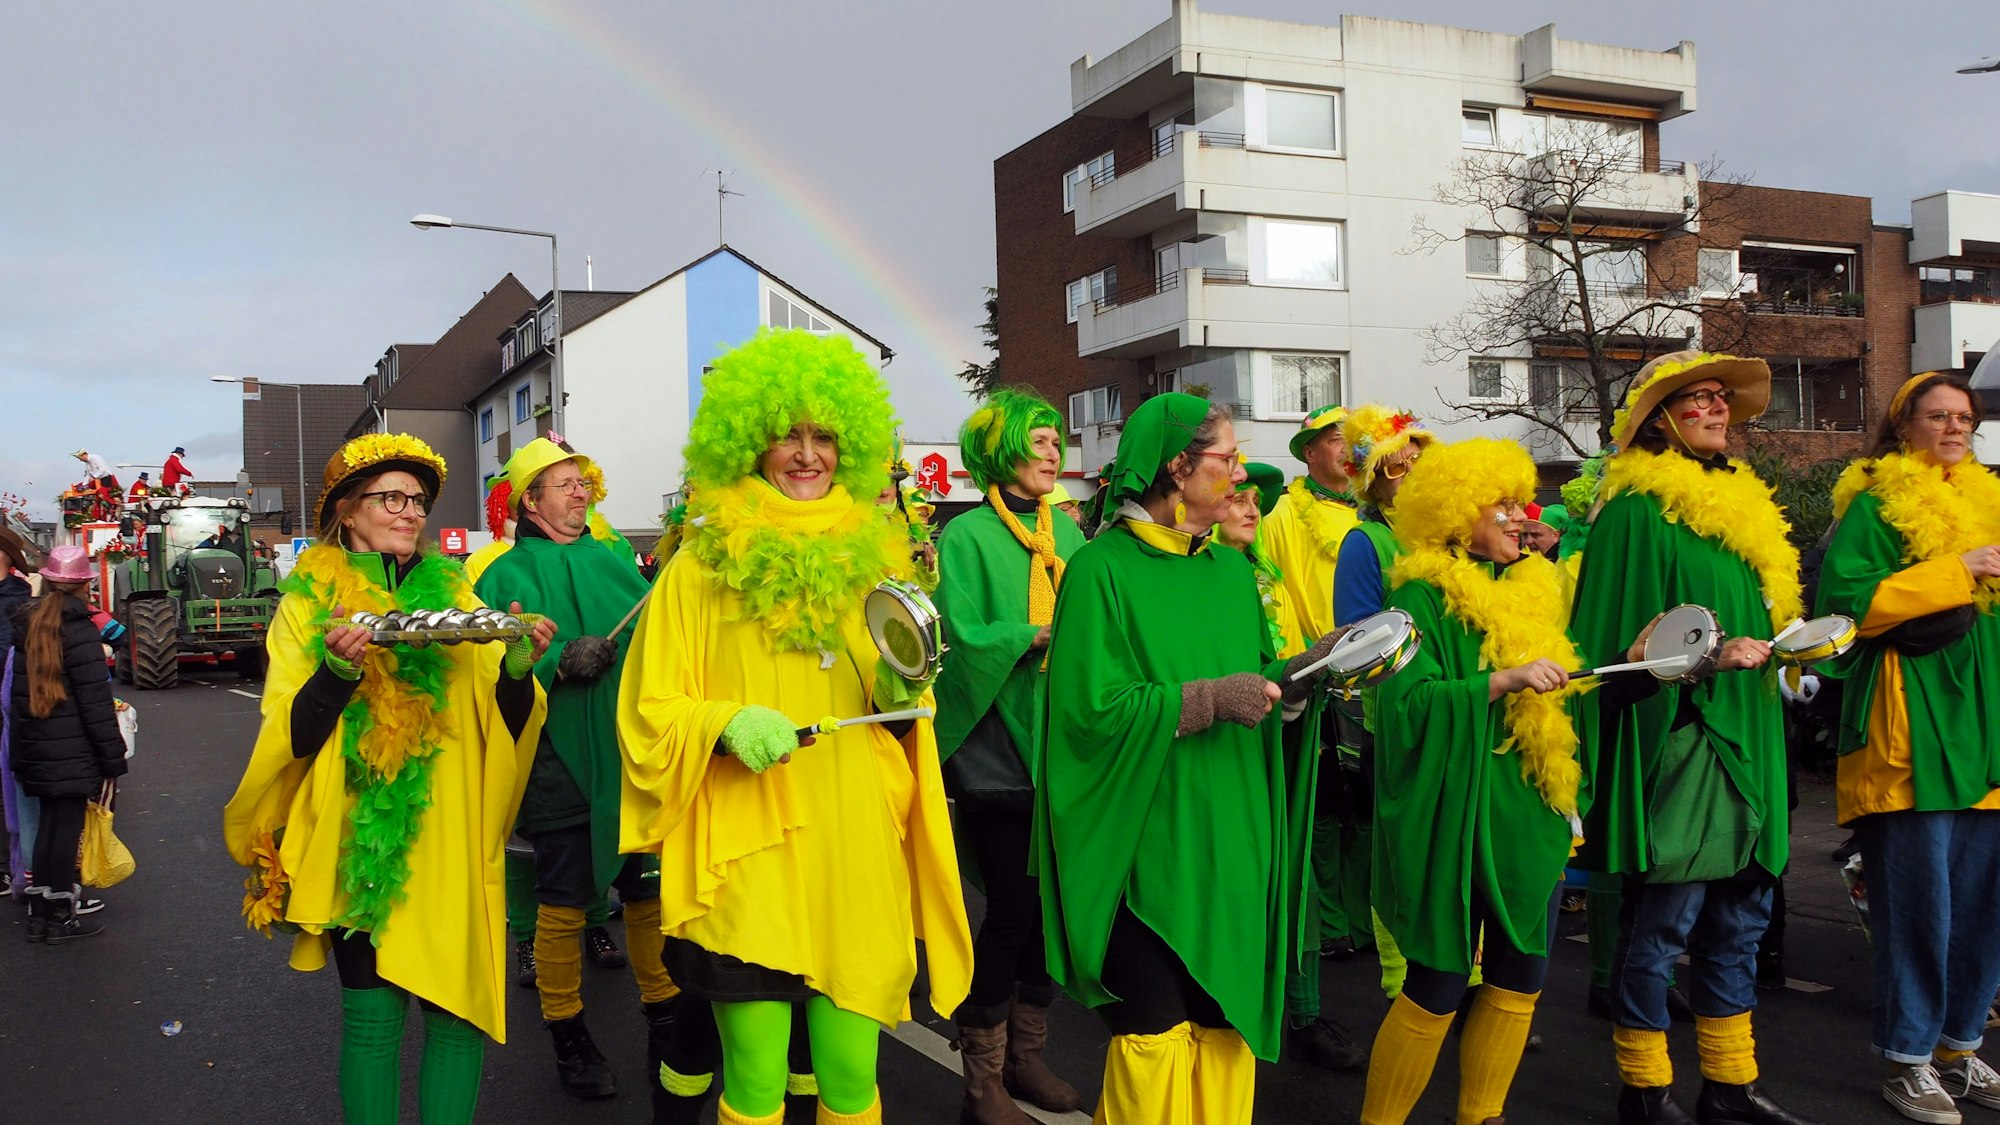 Eine grün-gelbe Sambagruppe tanzt unterm Regenbogen.